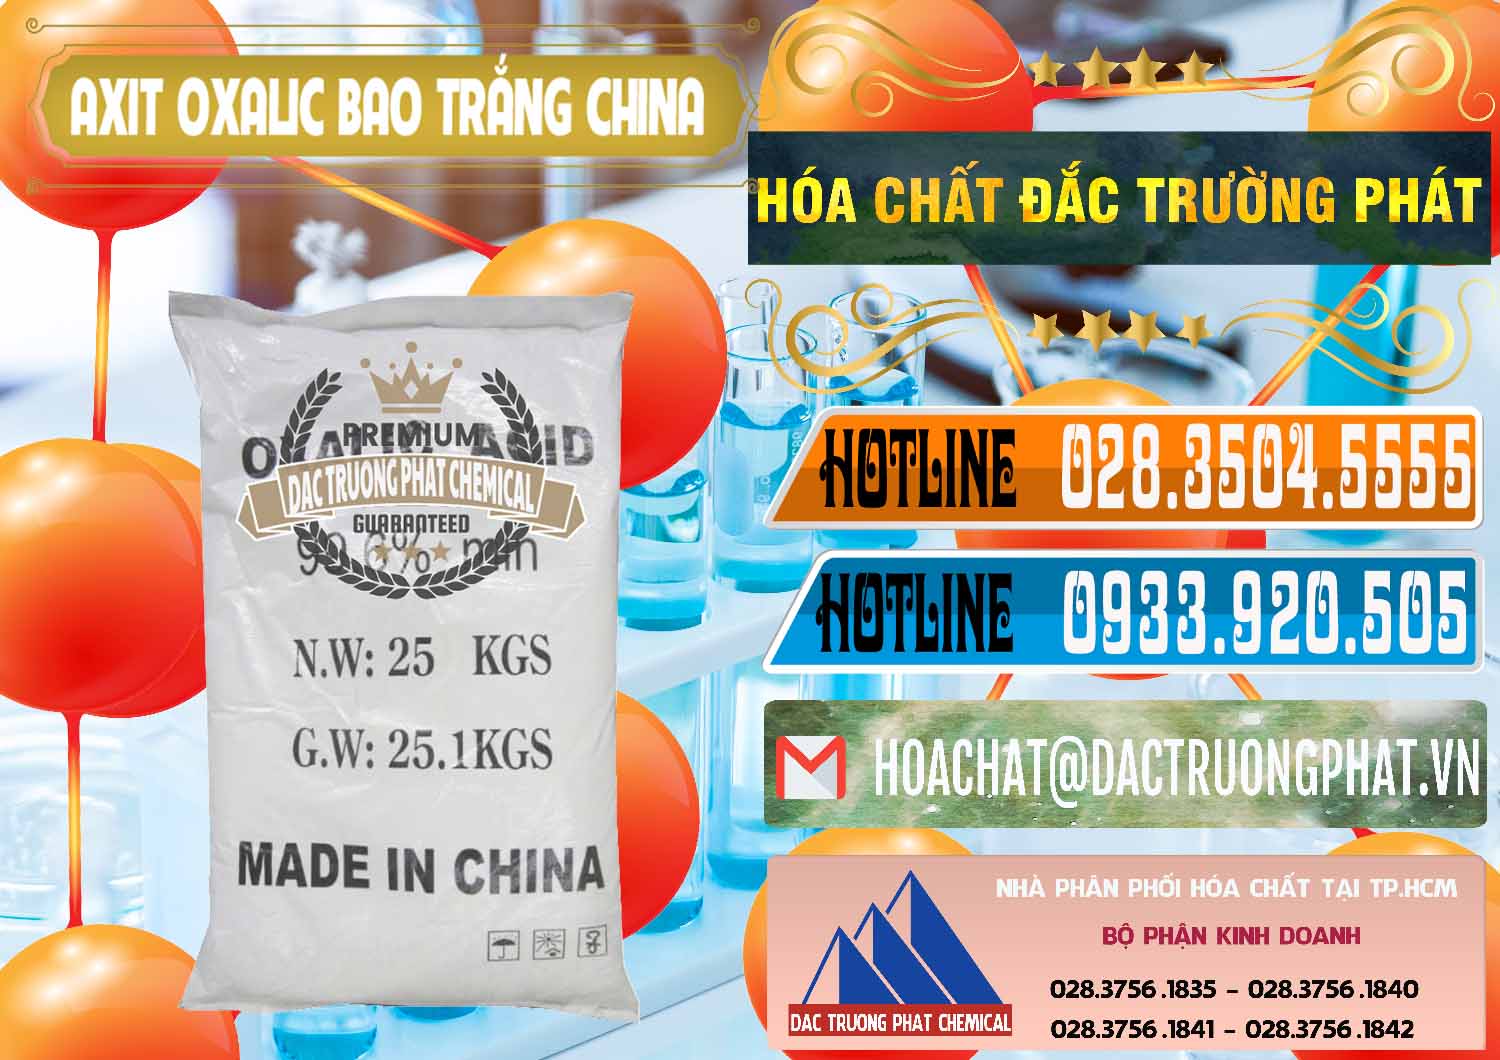 Chuyên nhập khẩu - bán Acid Oxalic – Axit Oxalic 99.6% Bao Trắng Trung Quốc China - 0270 - Cty chuyên nhập khẩu ( phân phối ) hóa chất tại TP.HCM - stmp.net